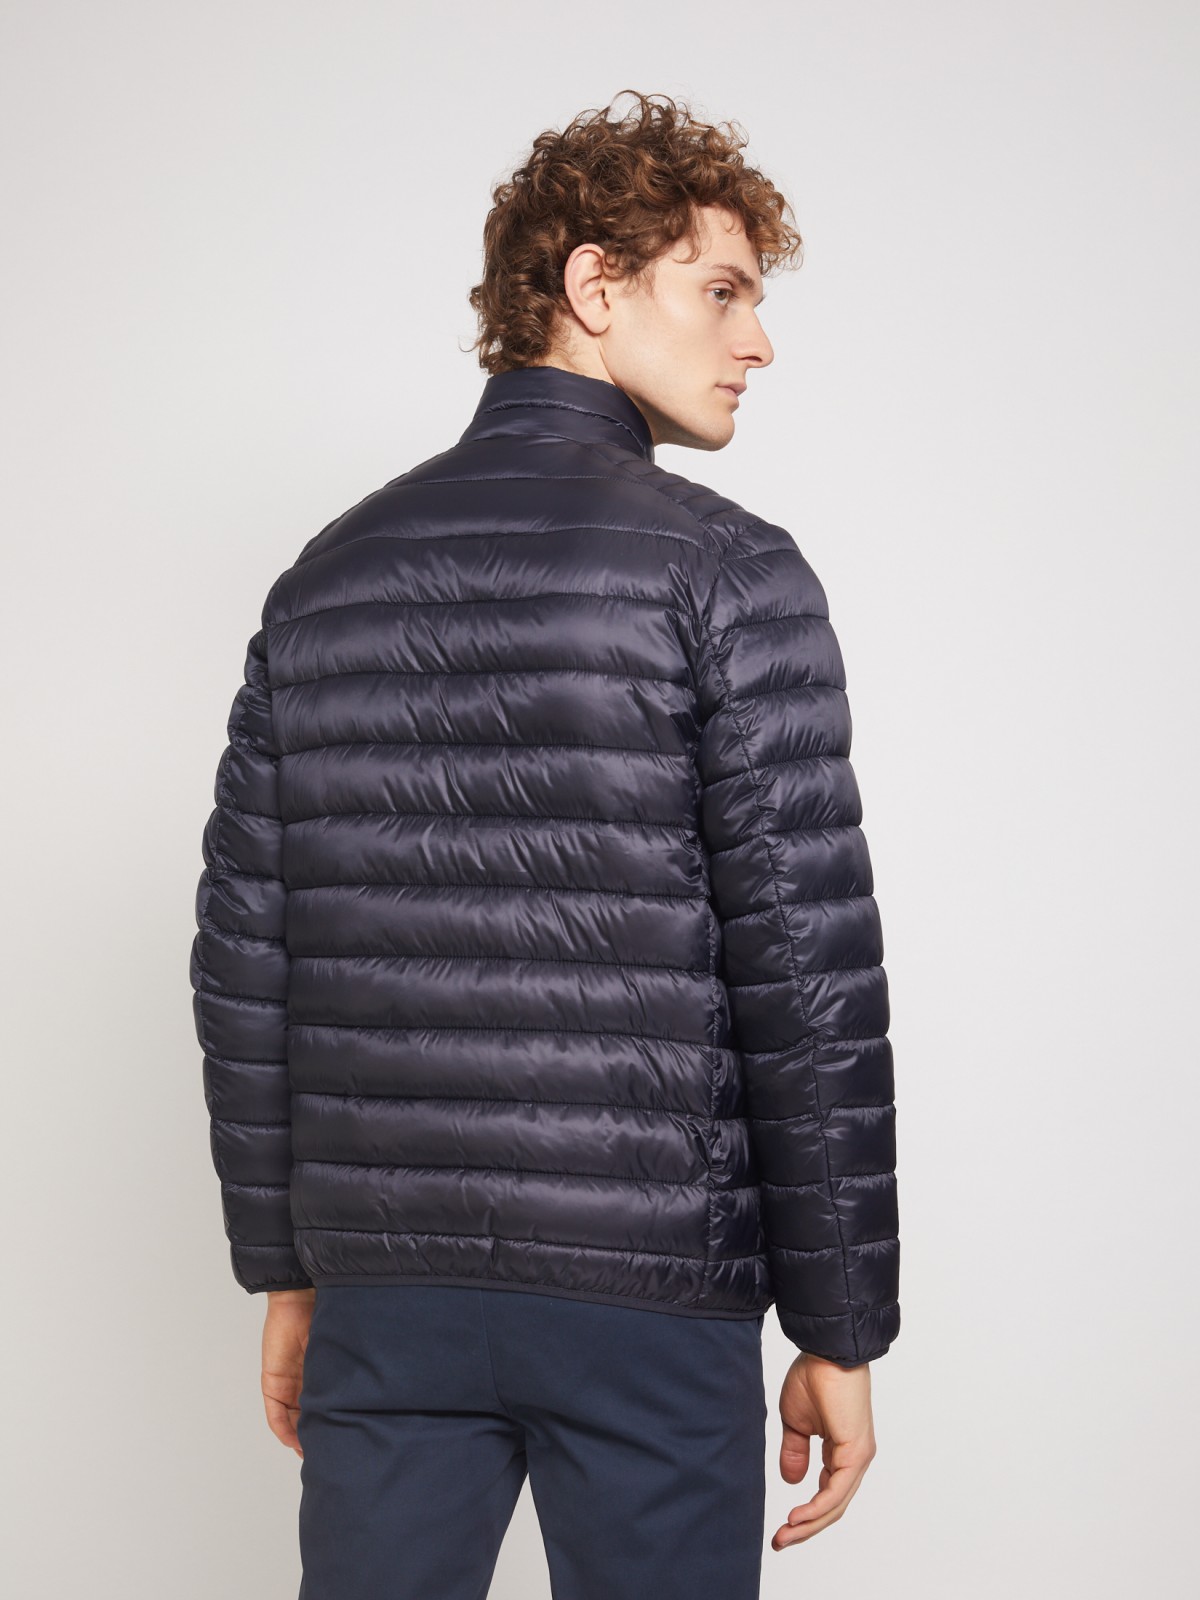 Ультралёгкая стёганая куртка с воротником-стойкой zolla 011335102214, цвет синий, размер S - фото 6